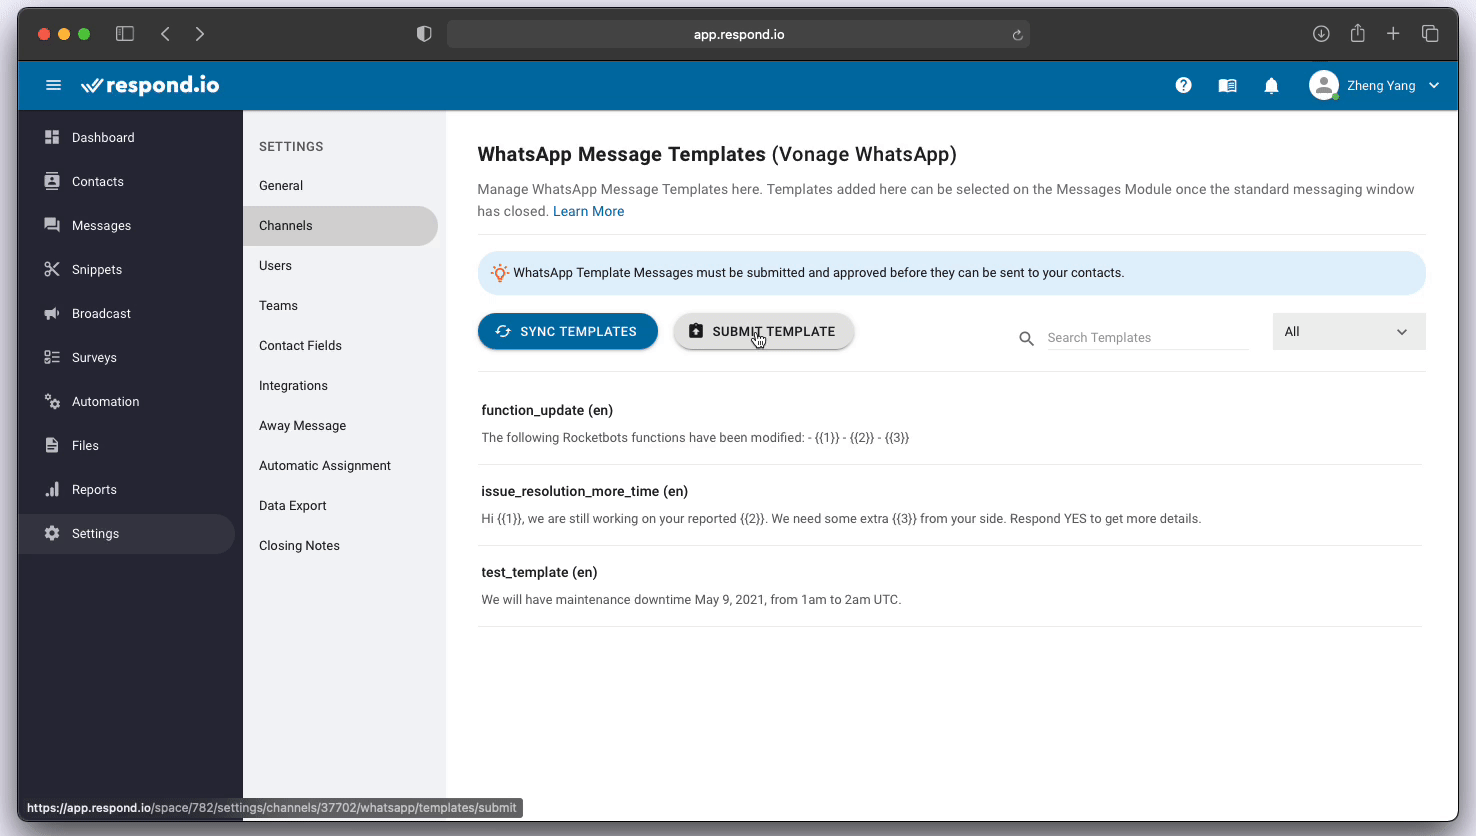 Enviando Vonage WhatsApp plantilla de mensaje para su aprobación en respond.io gif